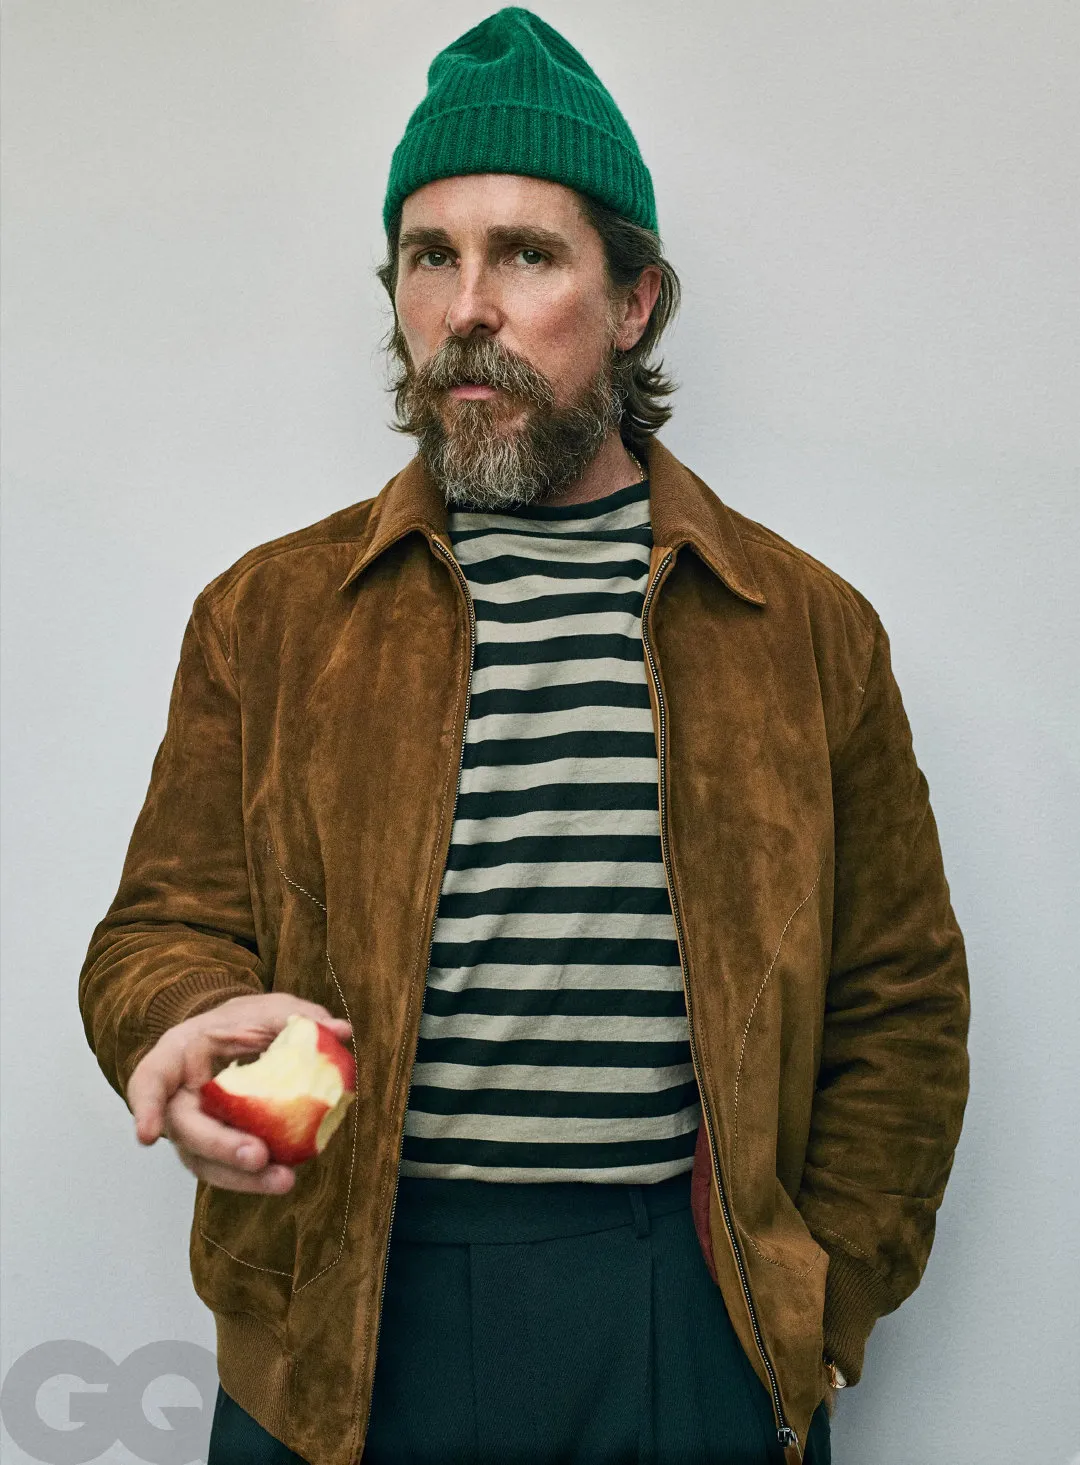 Christian Bale, 'GQ' magazine new photo | FMV6